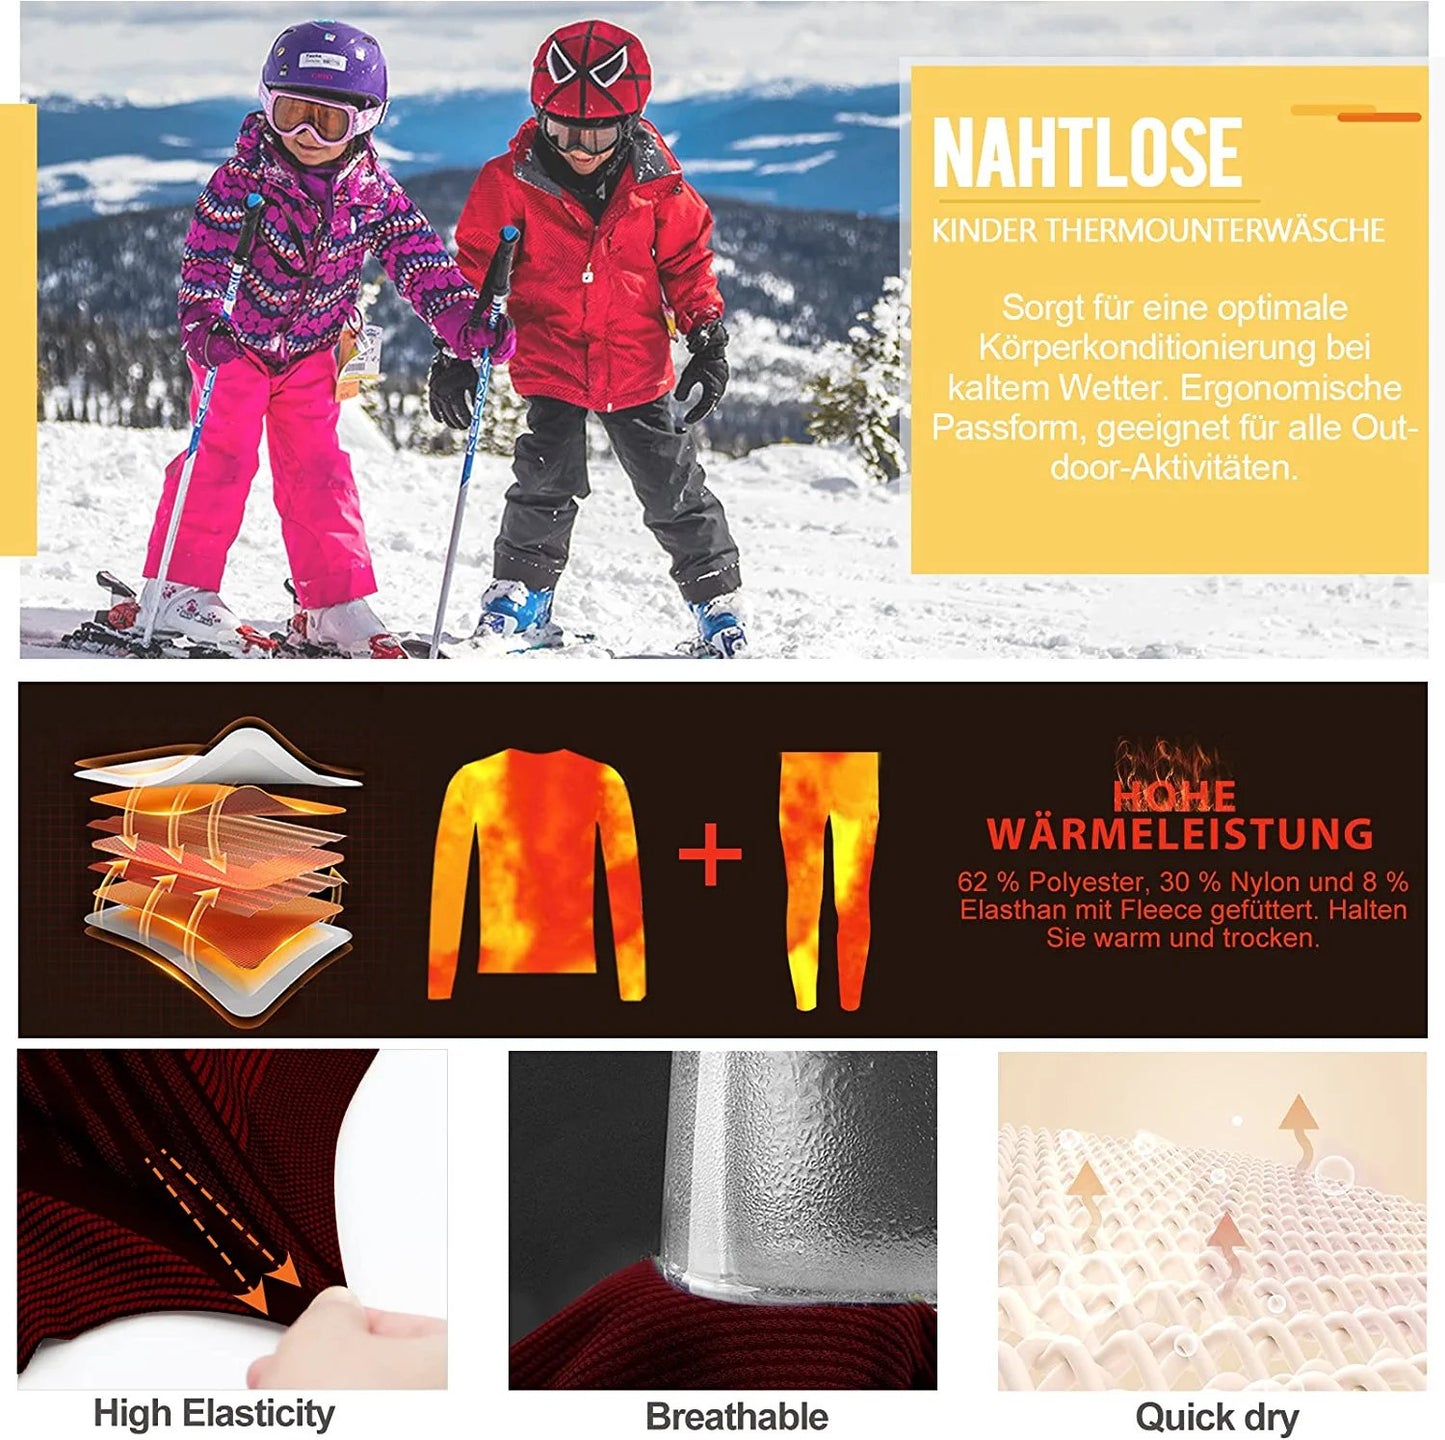 Thermal Underwear Set for Kids, Seamless Long Johns for Boys, Ski Base Layer Leggings & Shirt for Child